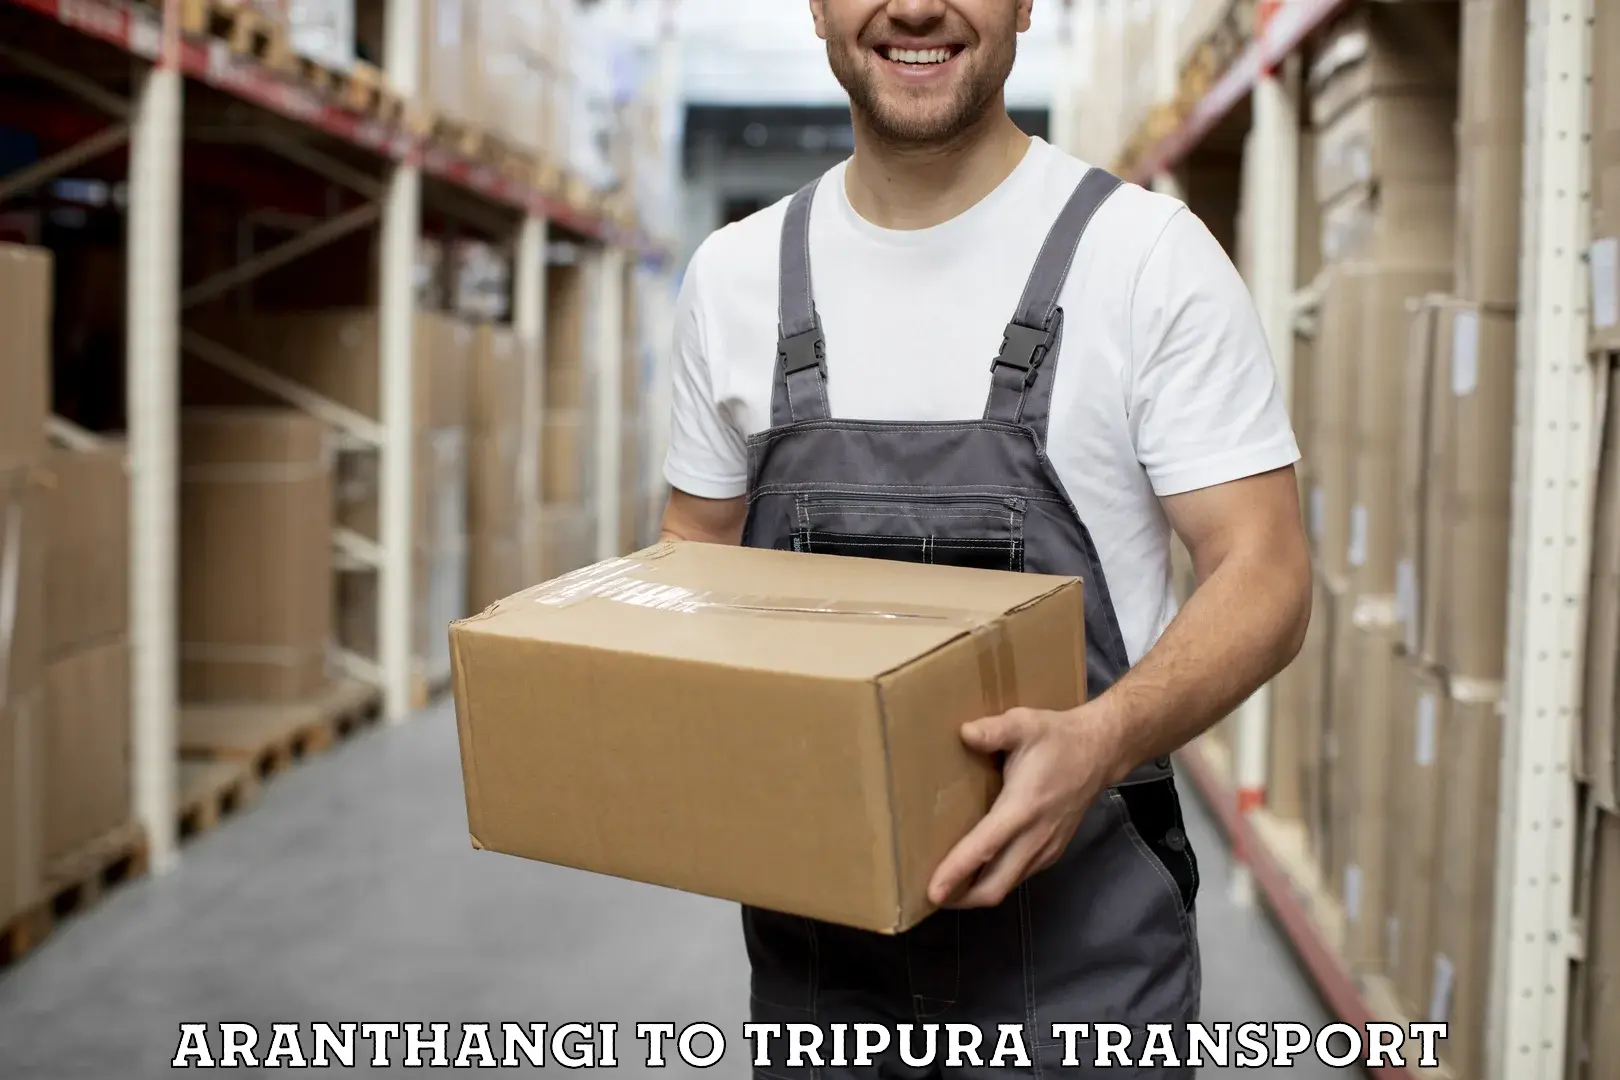 Two wheeler parcel service Aranthangi to Manughat